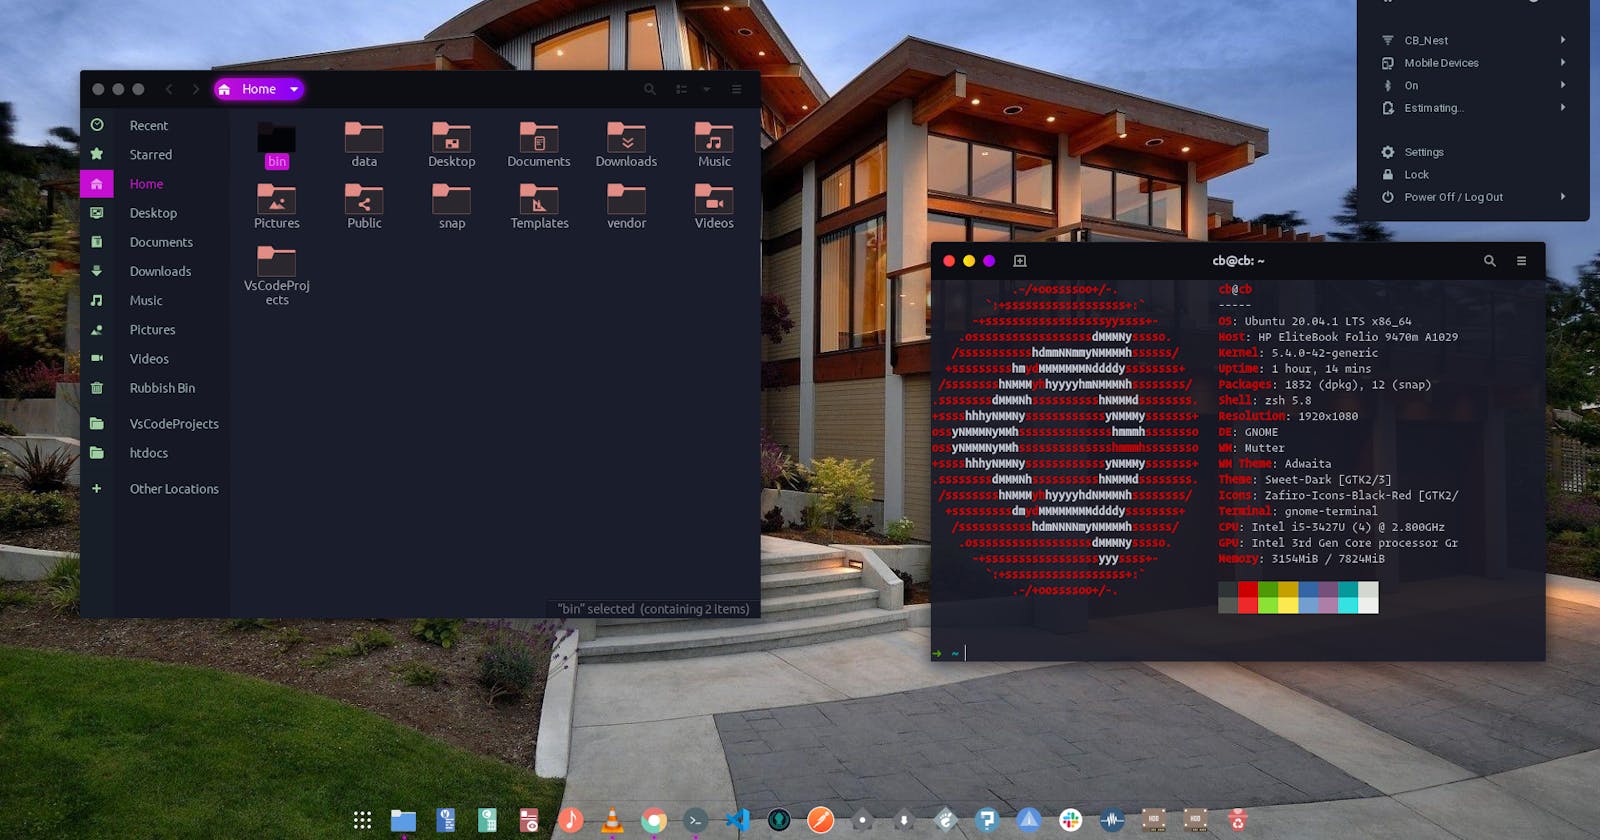 Customizing Ubuntu 20.04